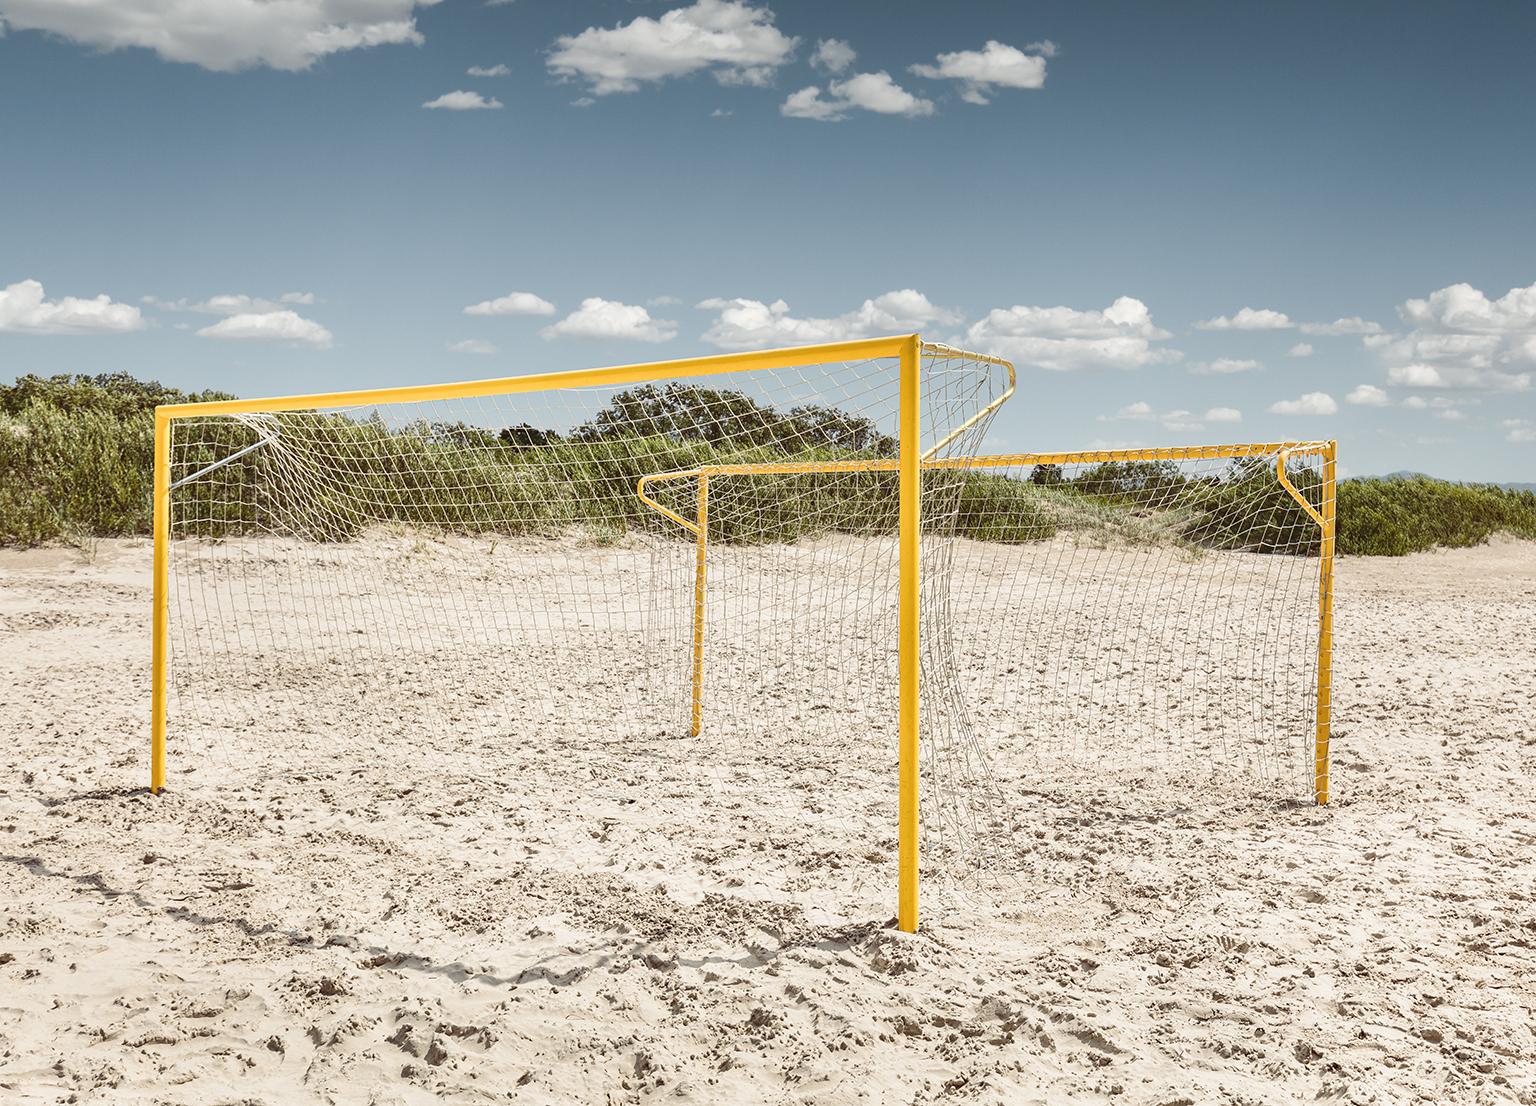 Erik Pawassar Color Photograph - Beach Goals - large format photograph of iconic yellow soccer goals